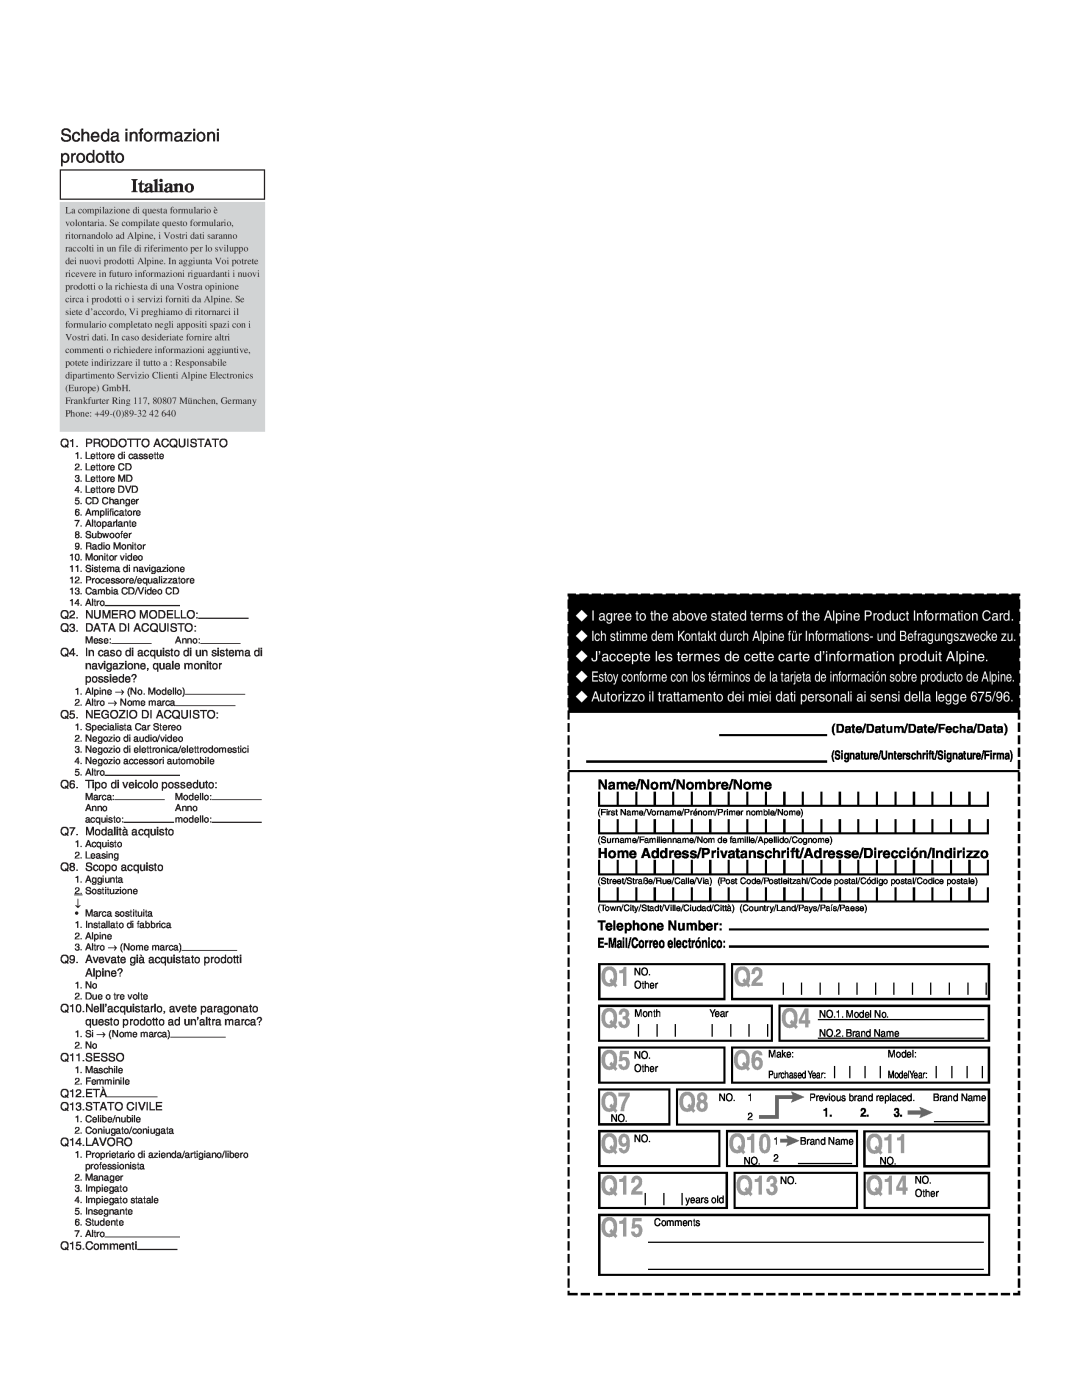 Alpine MRV-F345 owner manual Scheda informazioni prodotto, Italiano, Q9 NO, Q101, Q13NO 